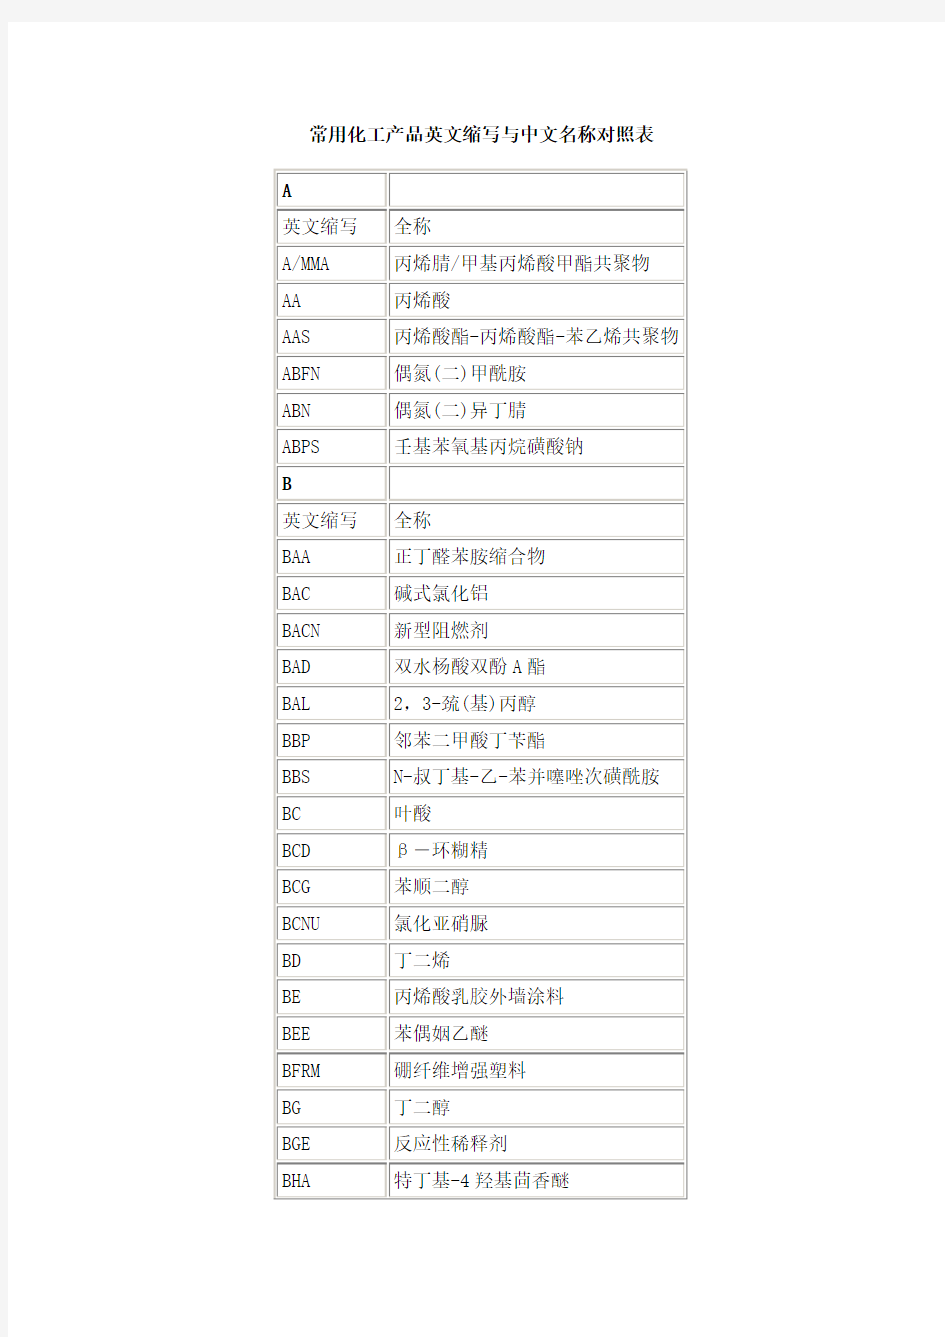 常用化工产品英文缩写与中文名称对照表